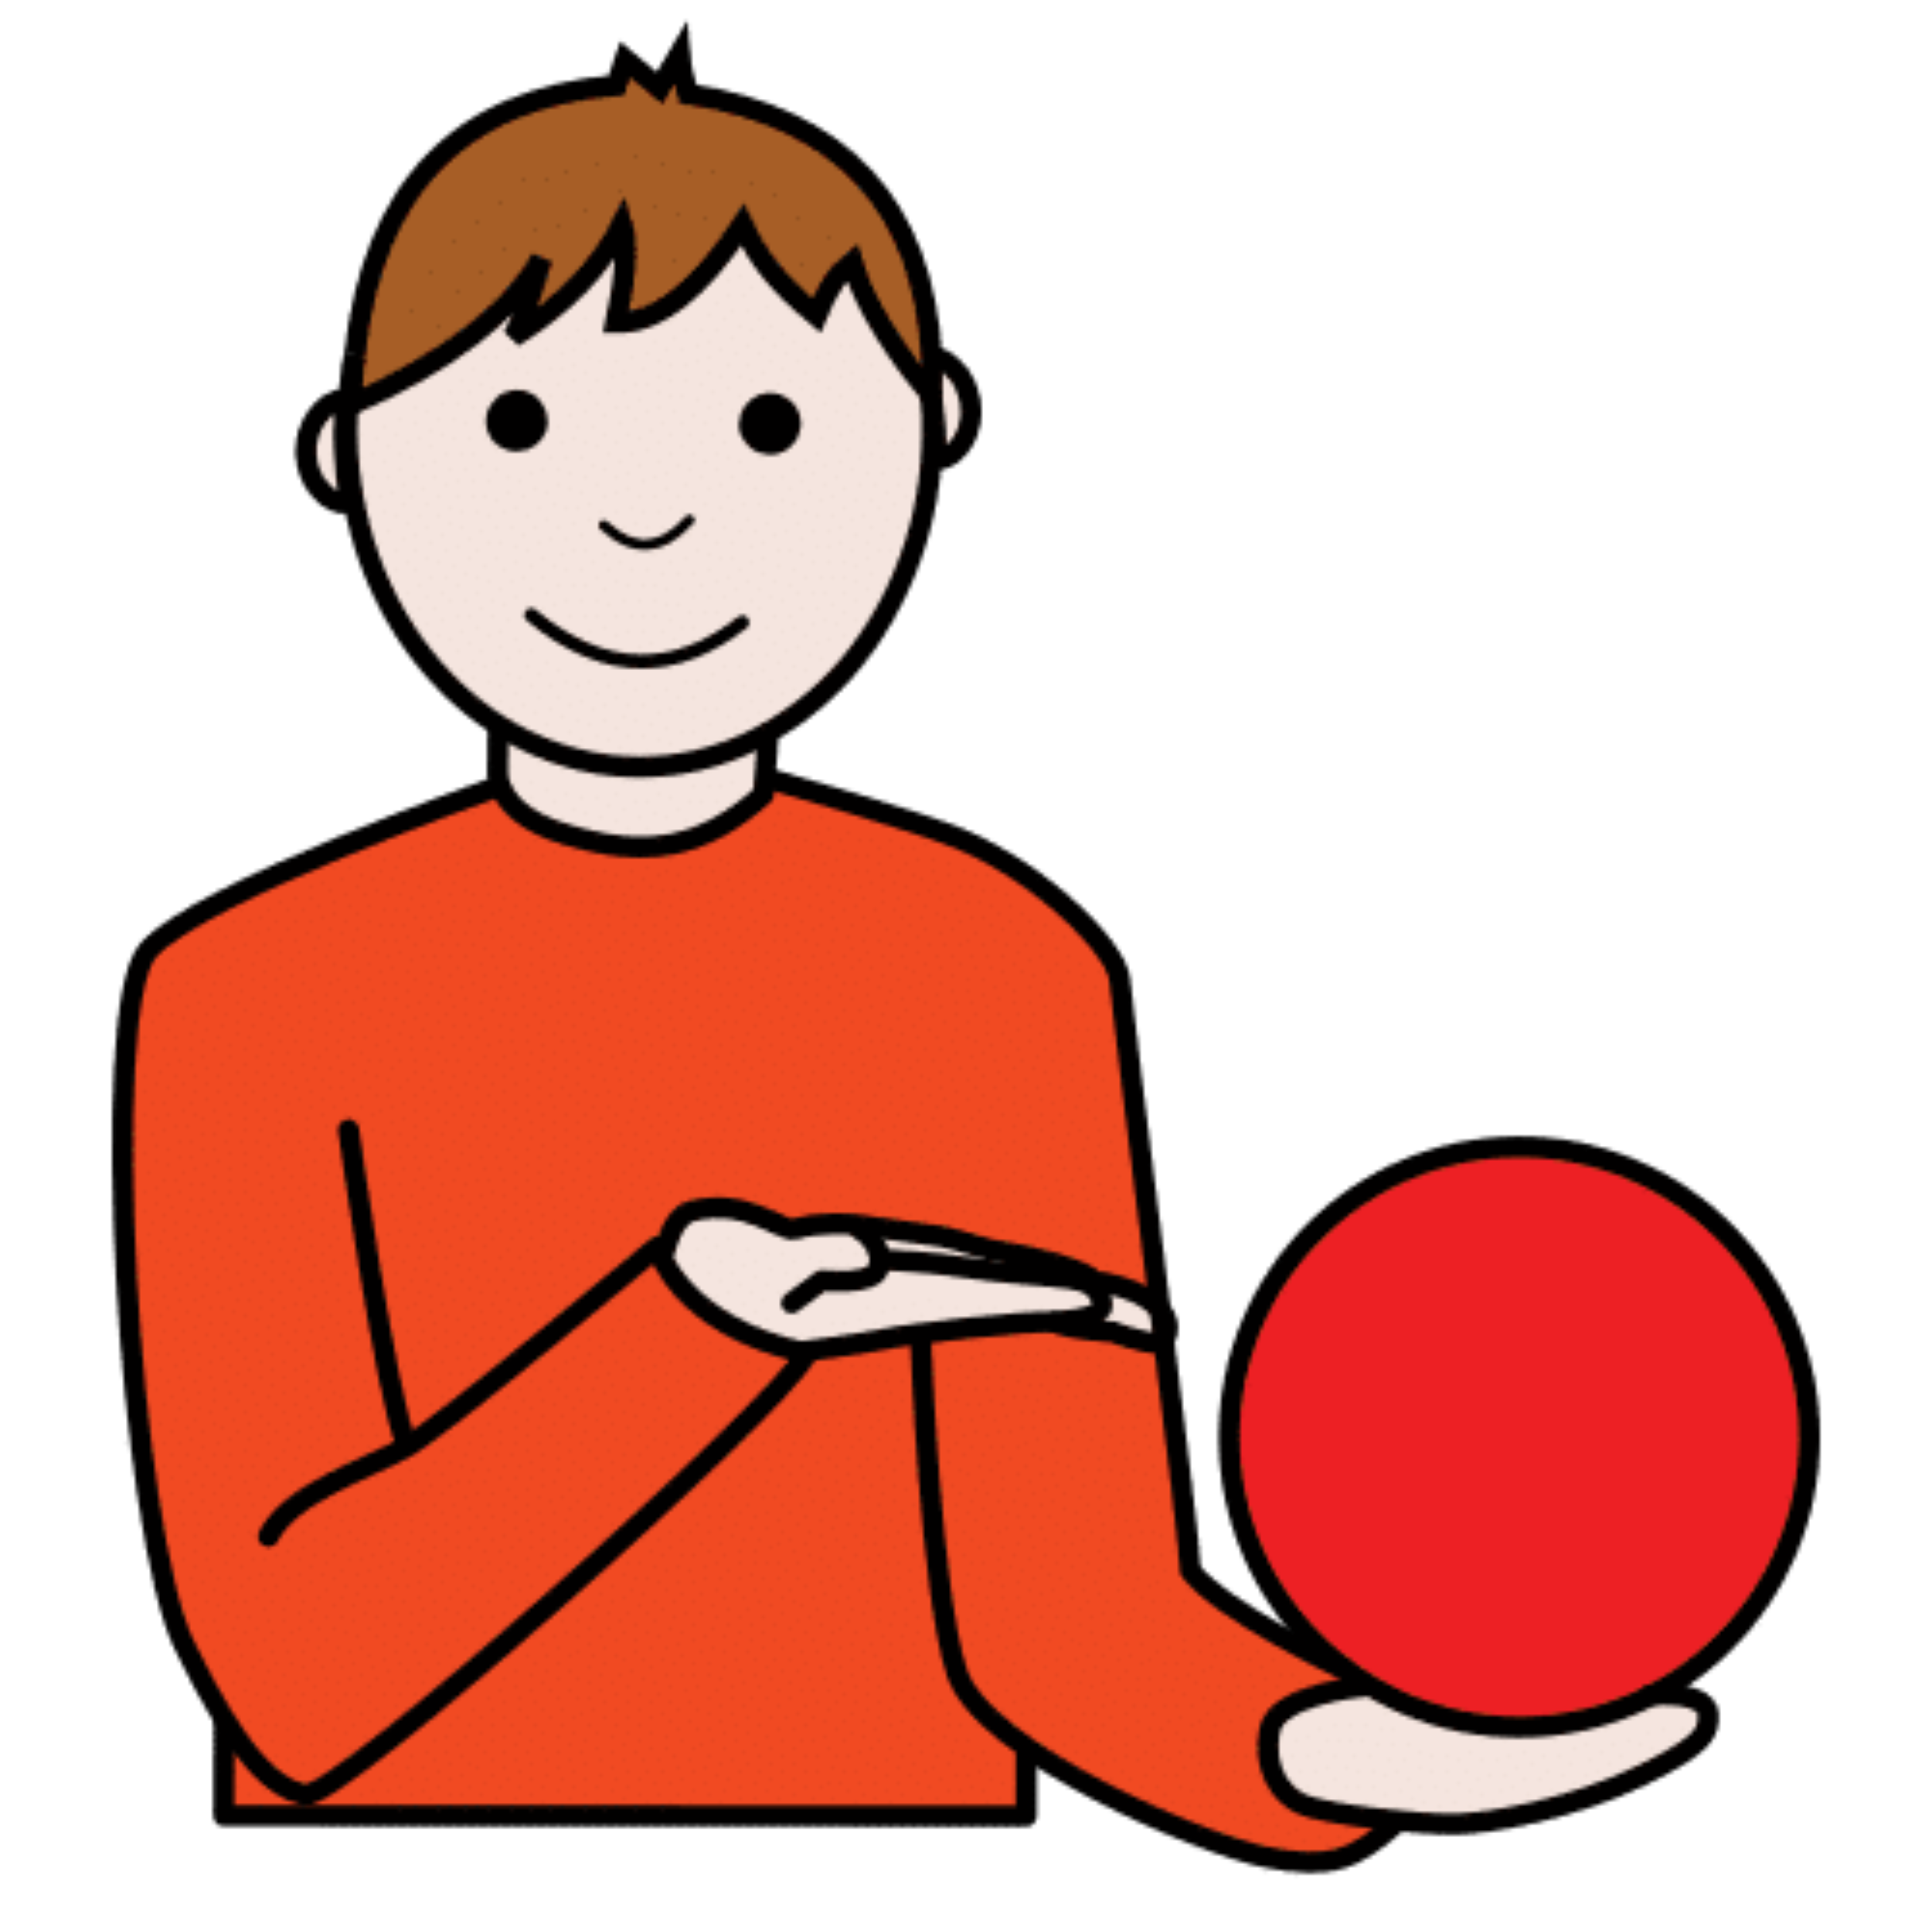 La imagen muestra a una persona que enseña una pelota.